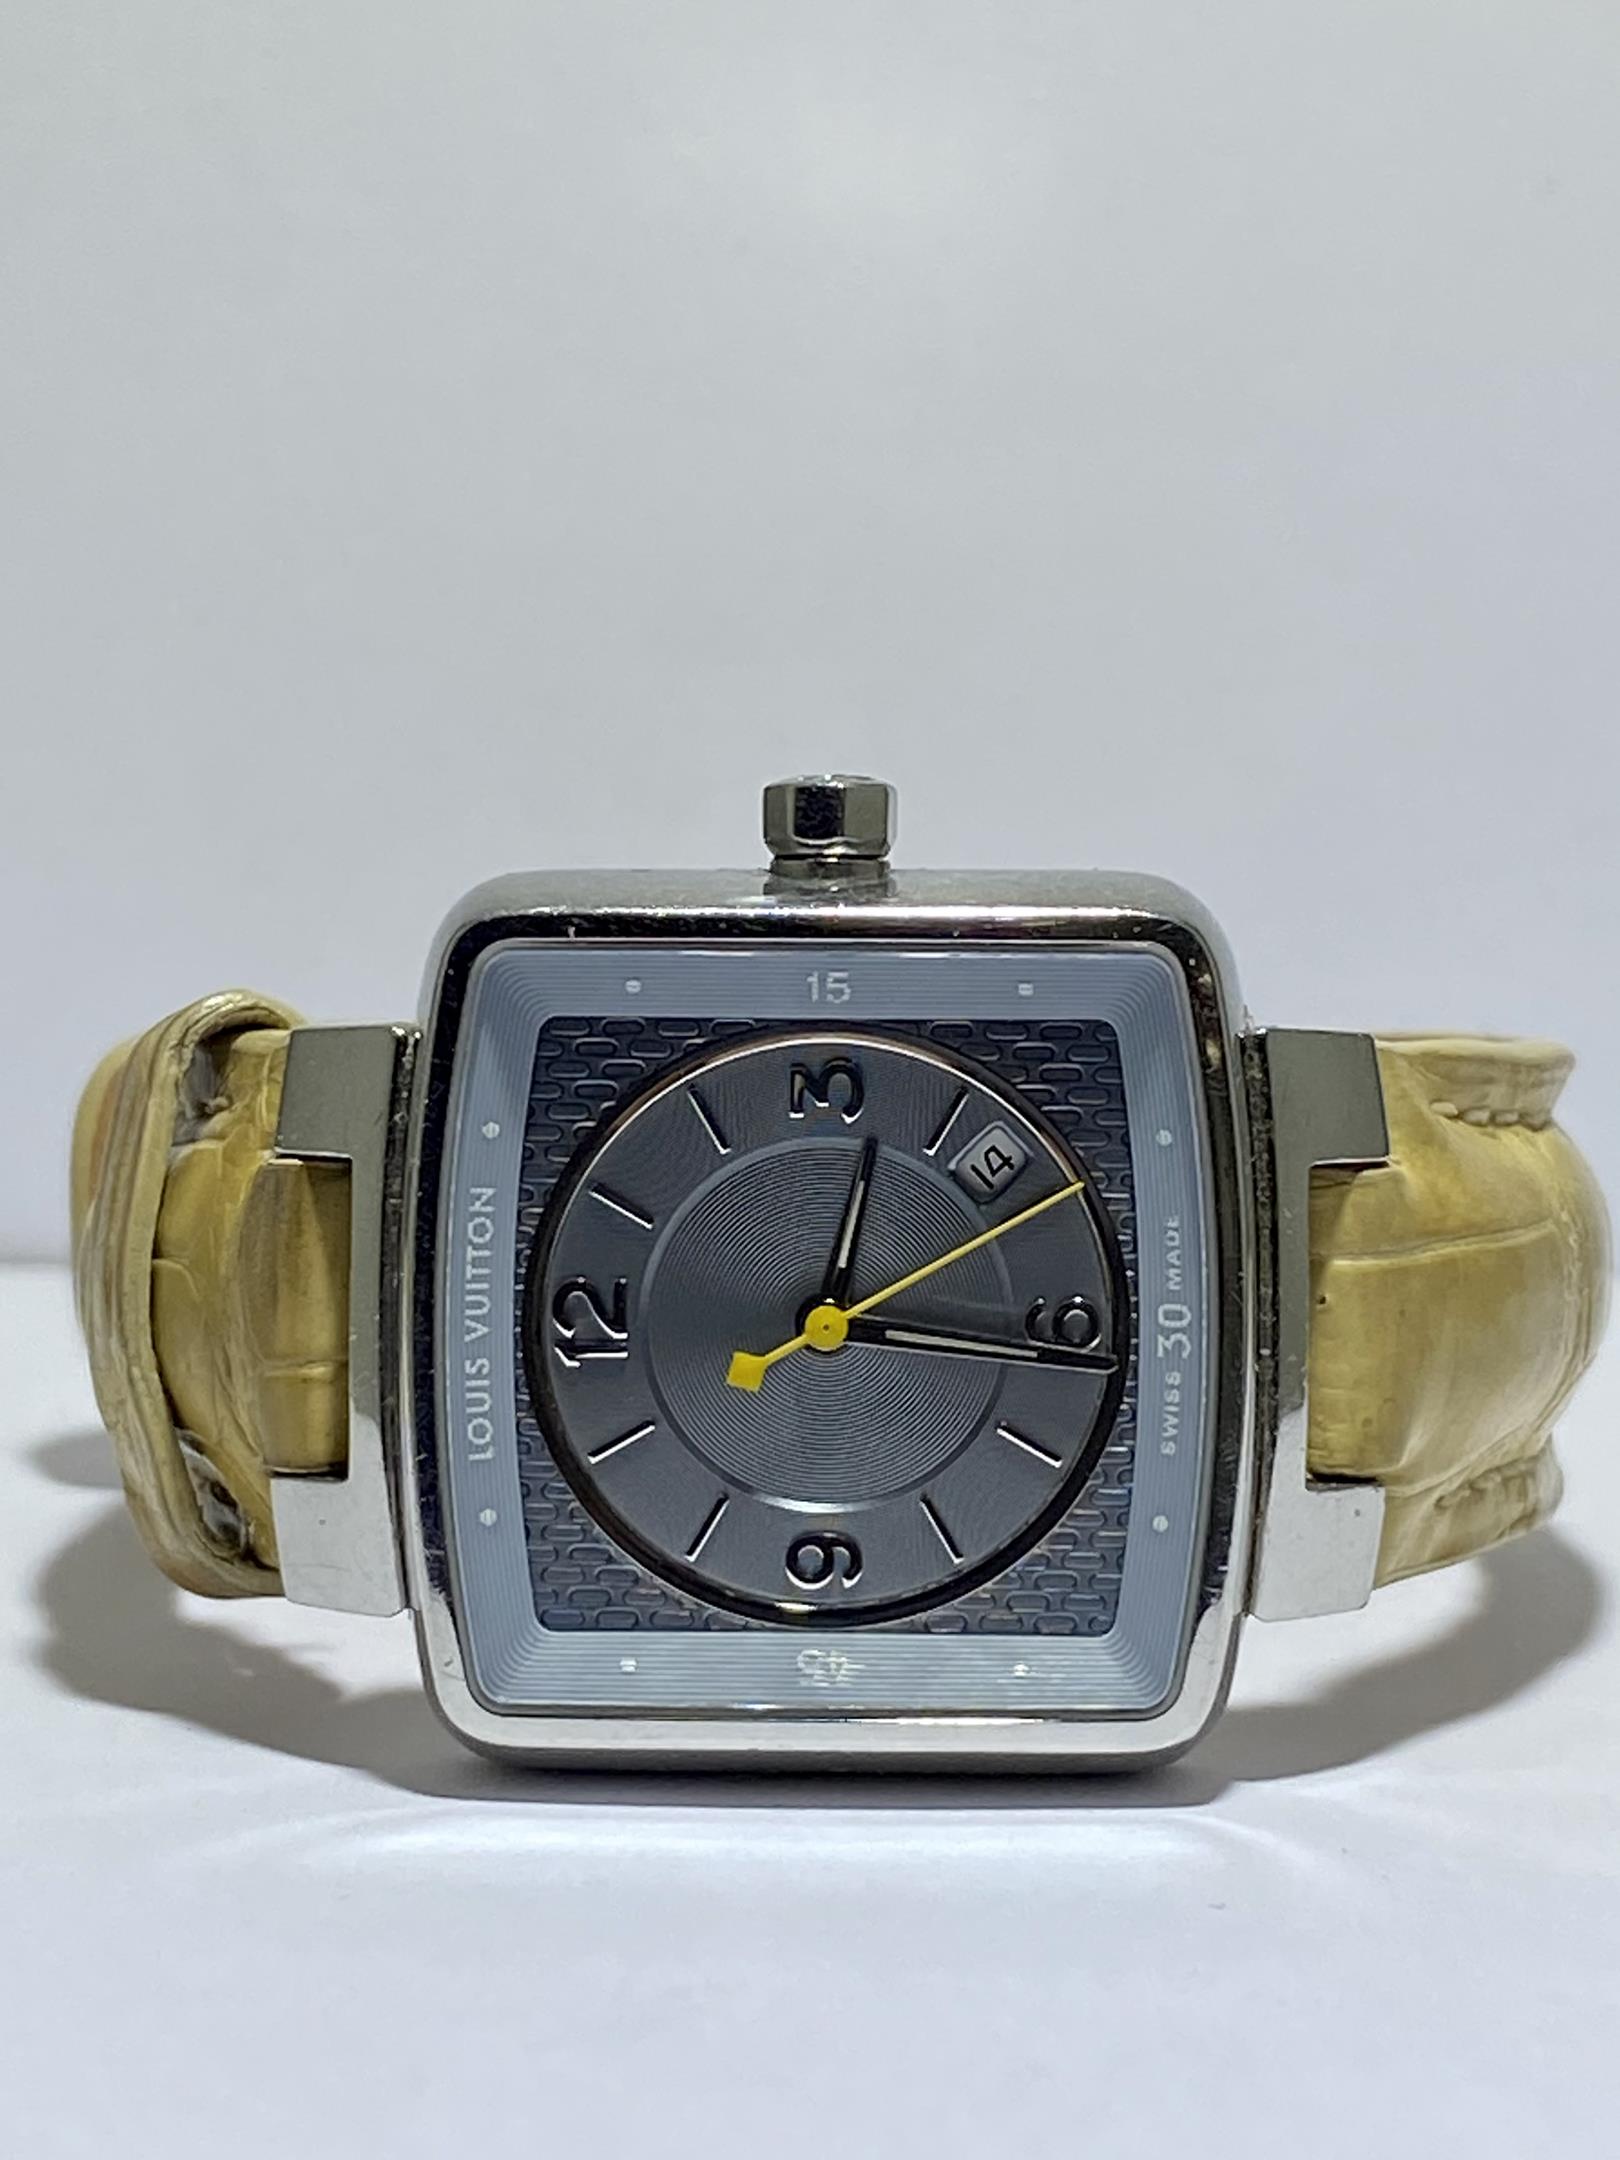 Comprar Relojes Louis Vuitton: Precios y Modelos